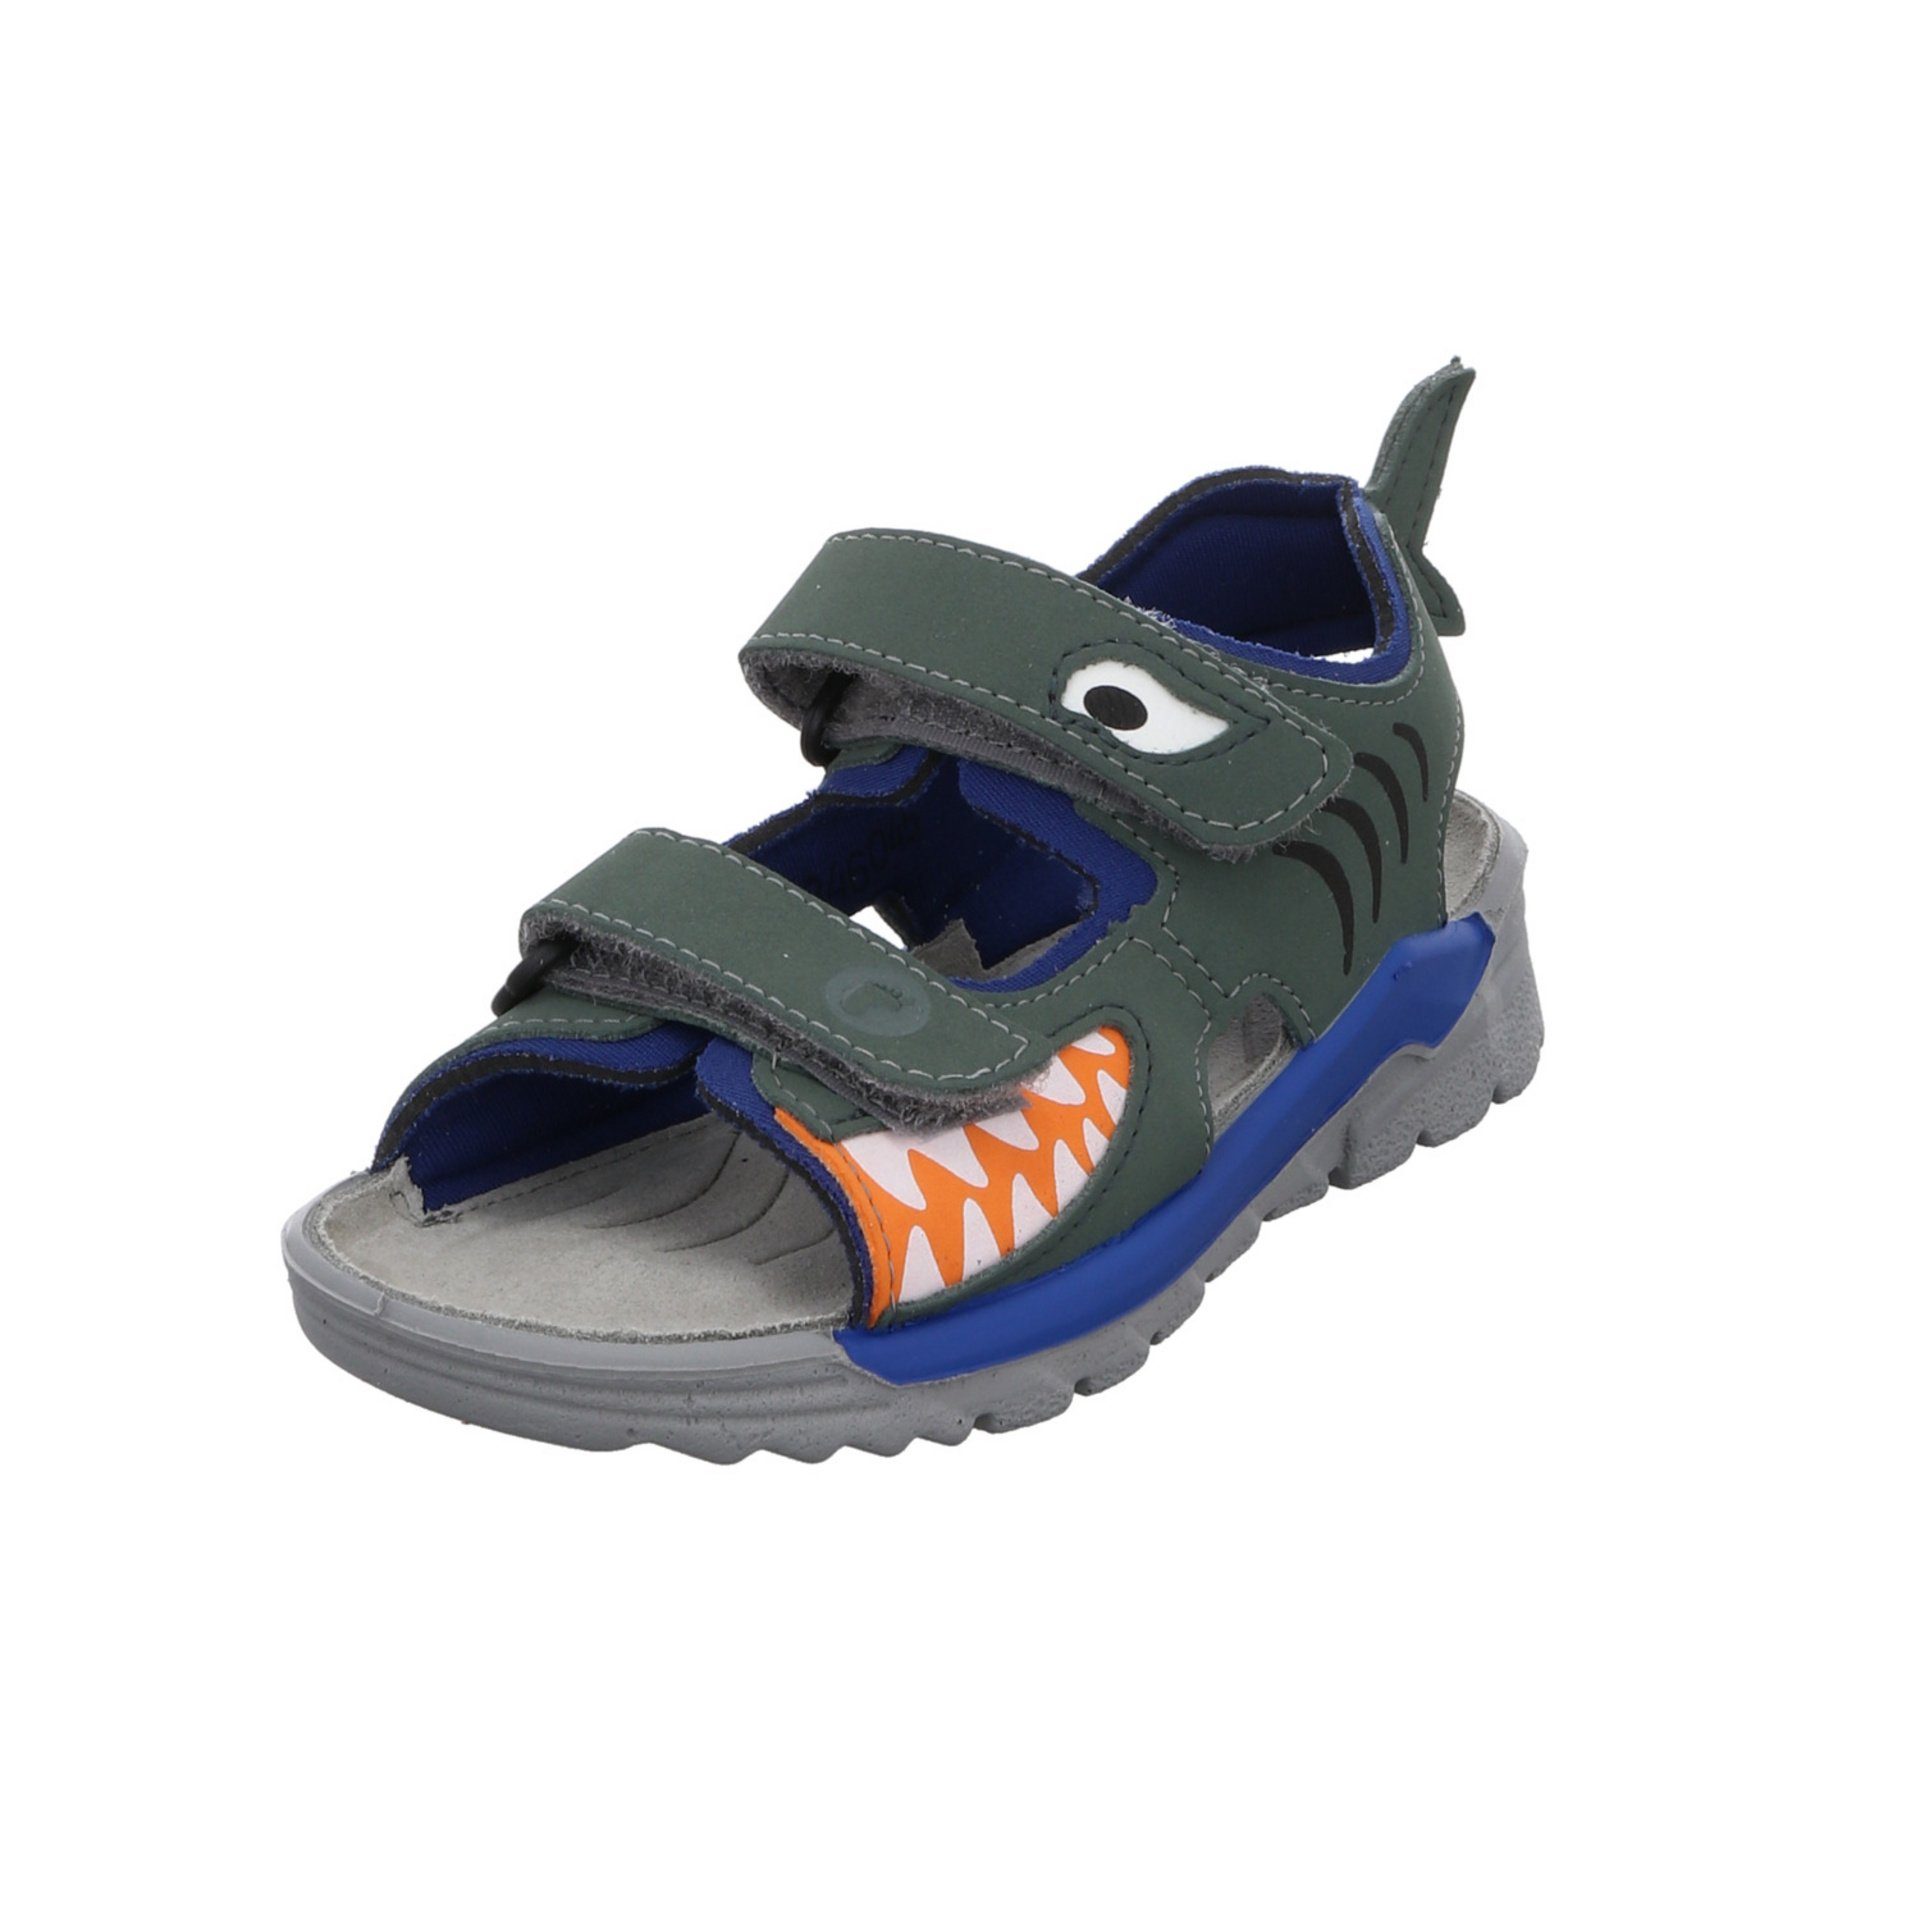 Schuhe Textil Sandale Sandale grün Shark Jungen Sandalen Kinderschuhe Ricosta